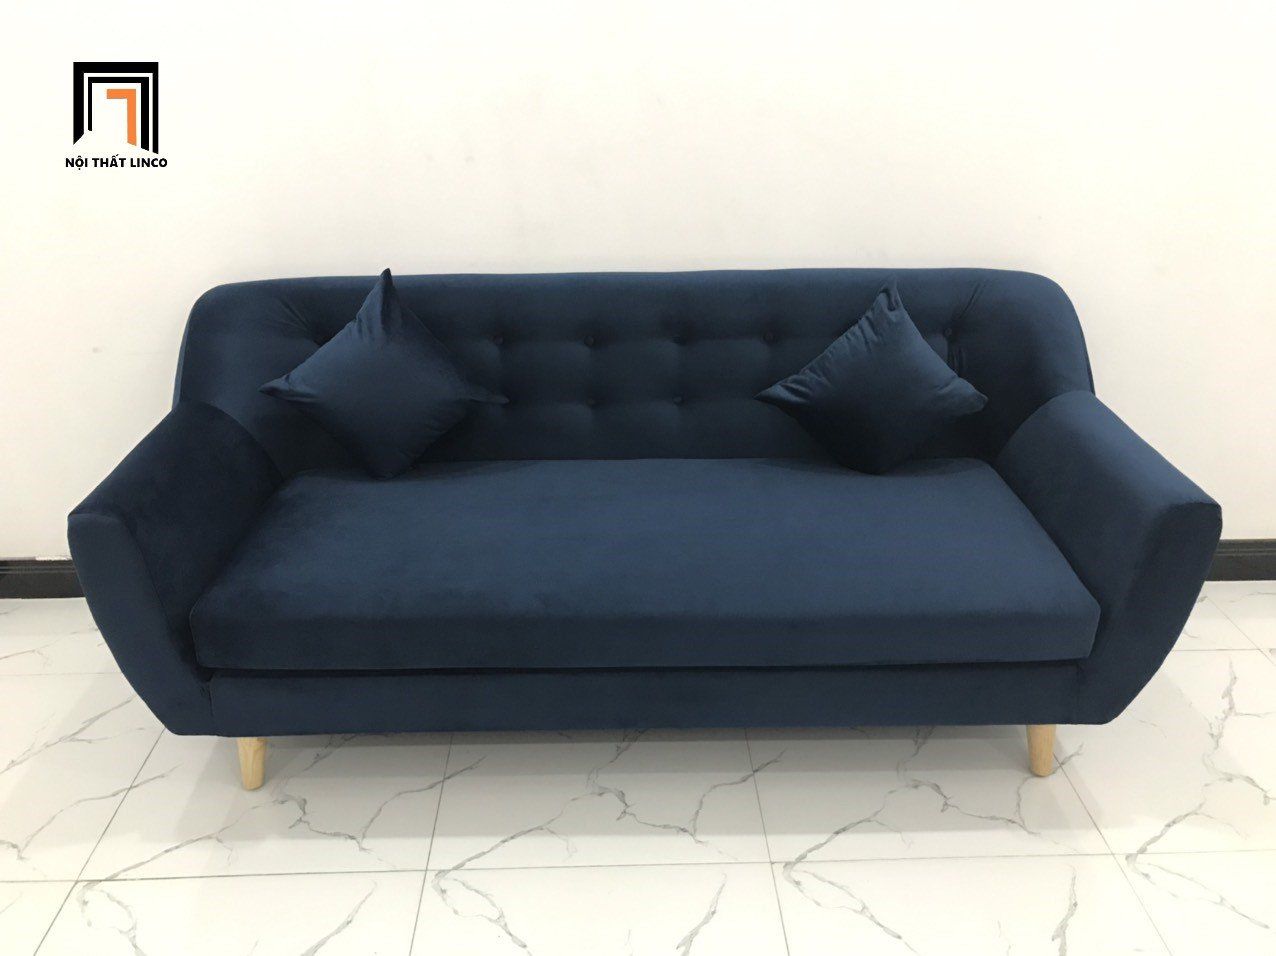  Bộ bàn ghế sofa băng BGN dài 1m9 xanh dương đậm vải nhung 